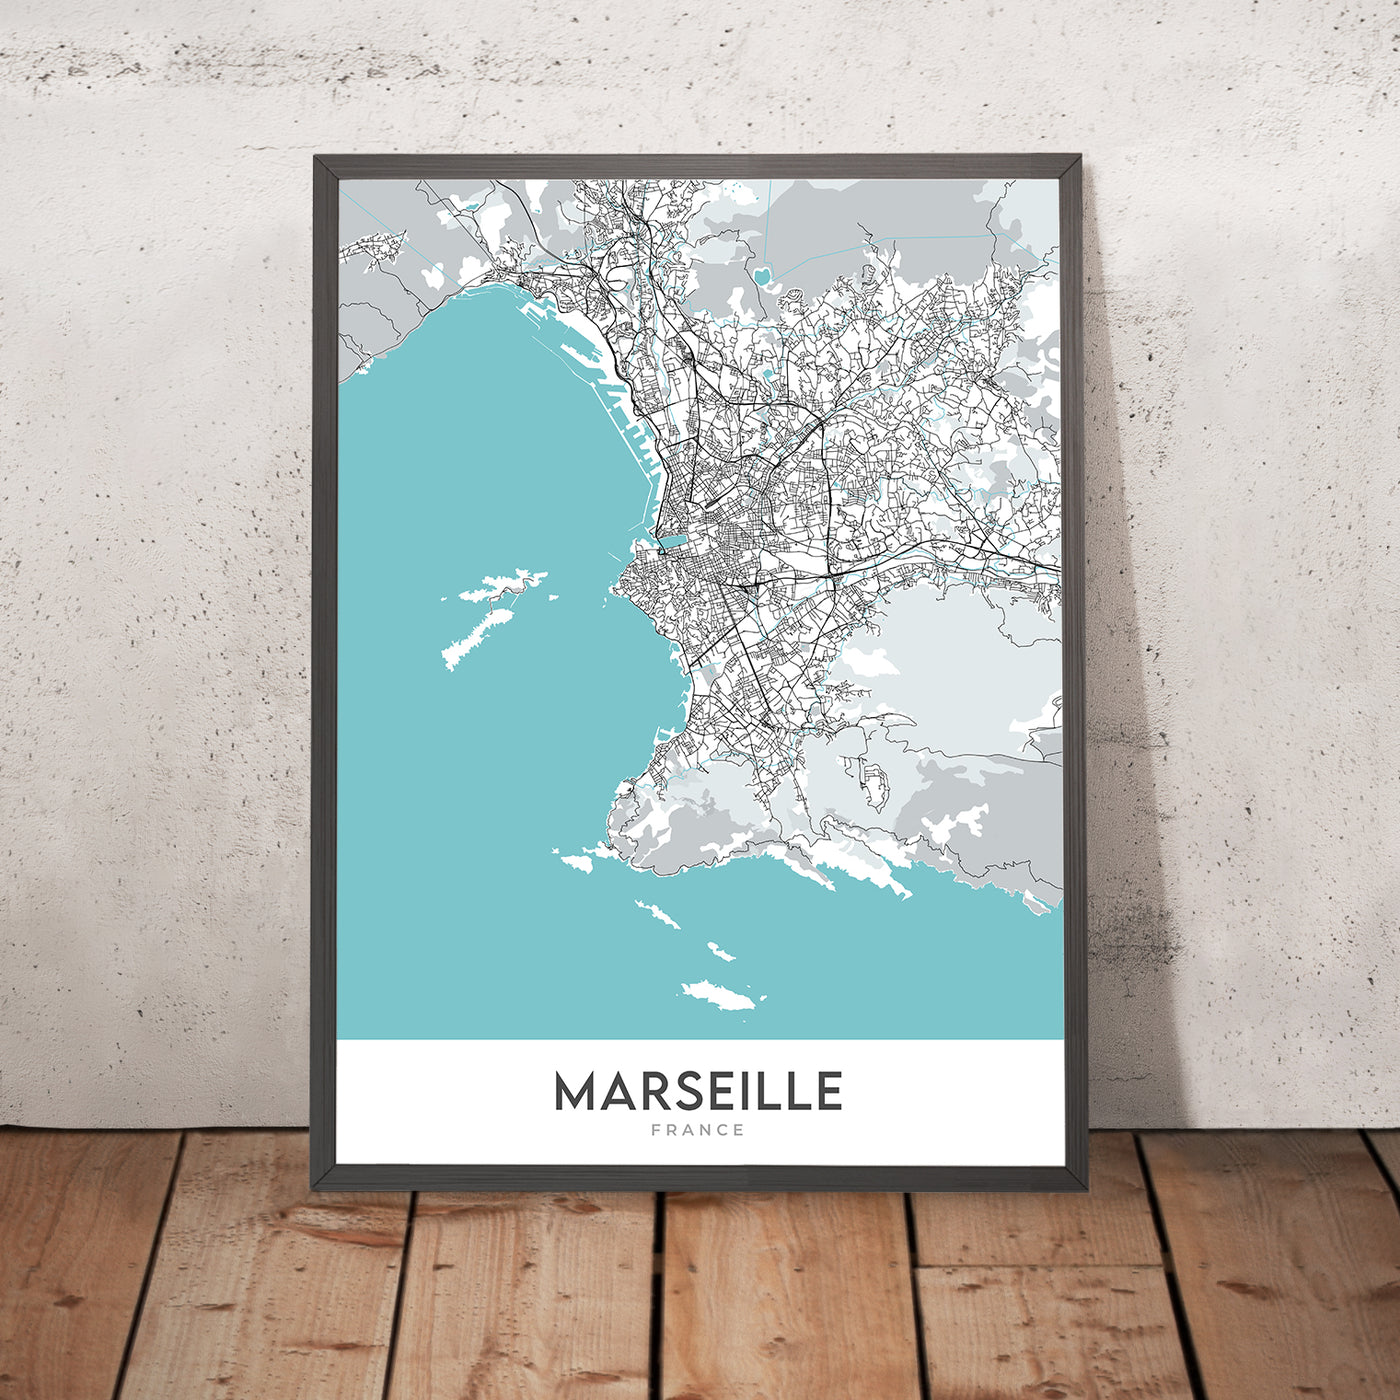 Plan de la ville moderne de Marseille, France : Panier, Corniche, Stade Vélodrome, Palais Longchamp, Calanques